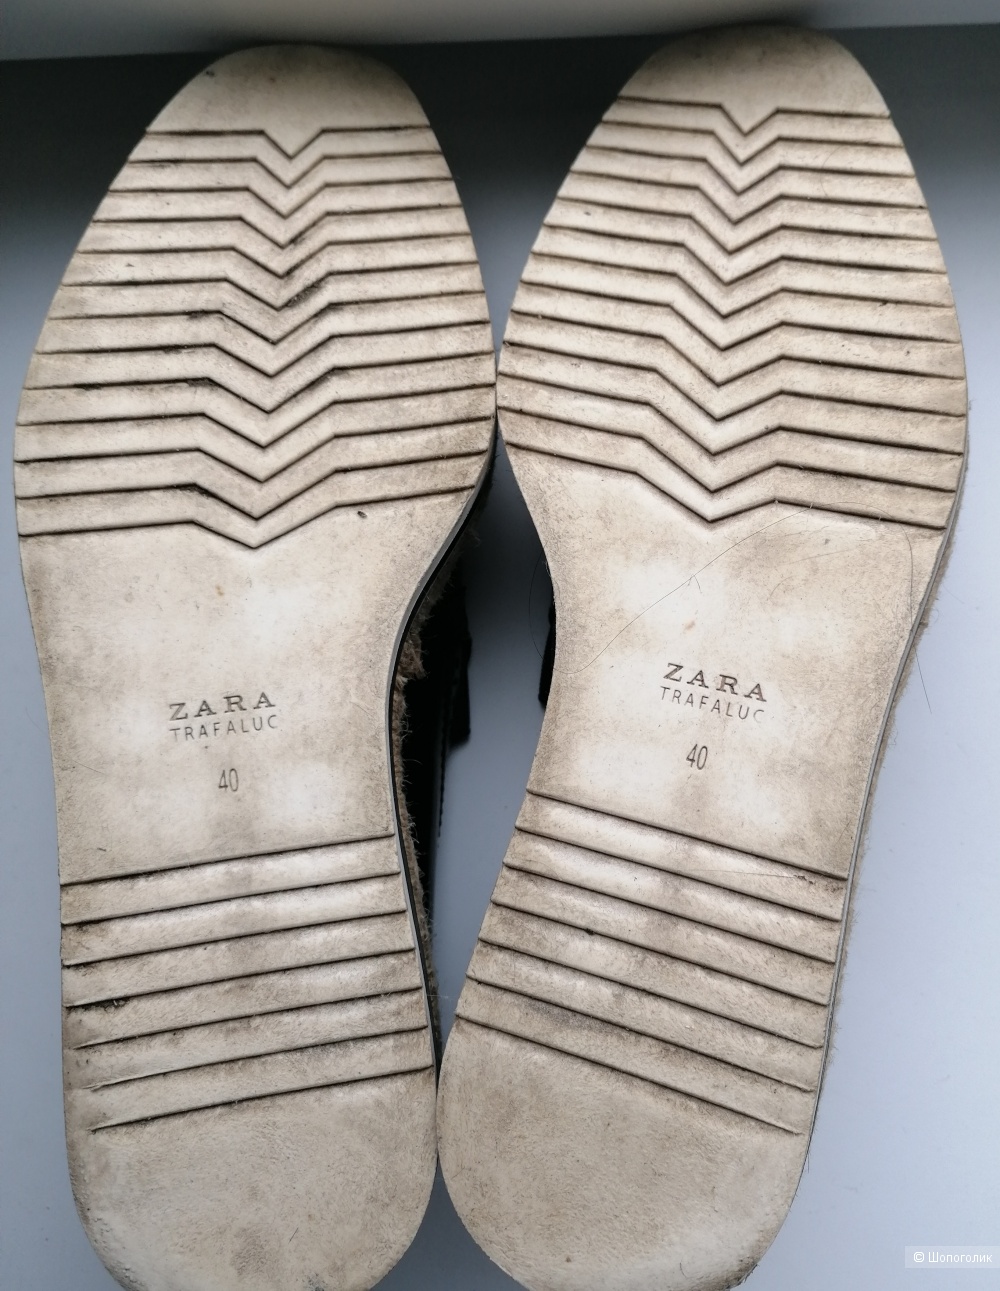 Кожаные туфли Zara 40 размера